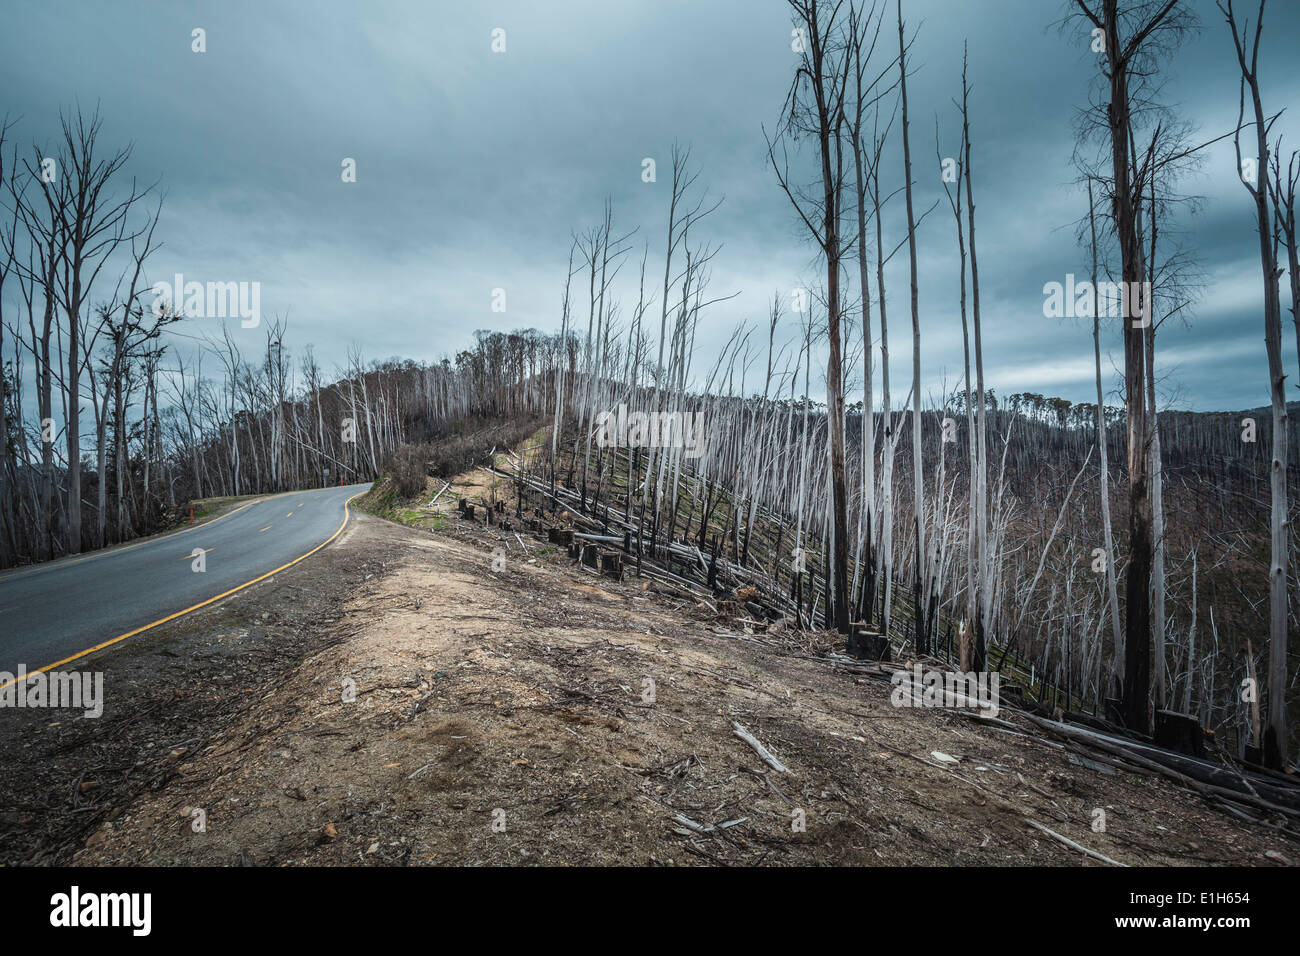 Feu de forêt a ravagé les arbres en direction de Mt Hotham, Victoria, Australie Banque D'Images